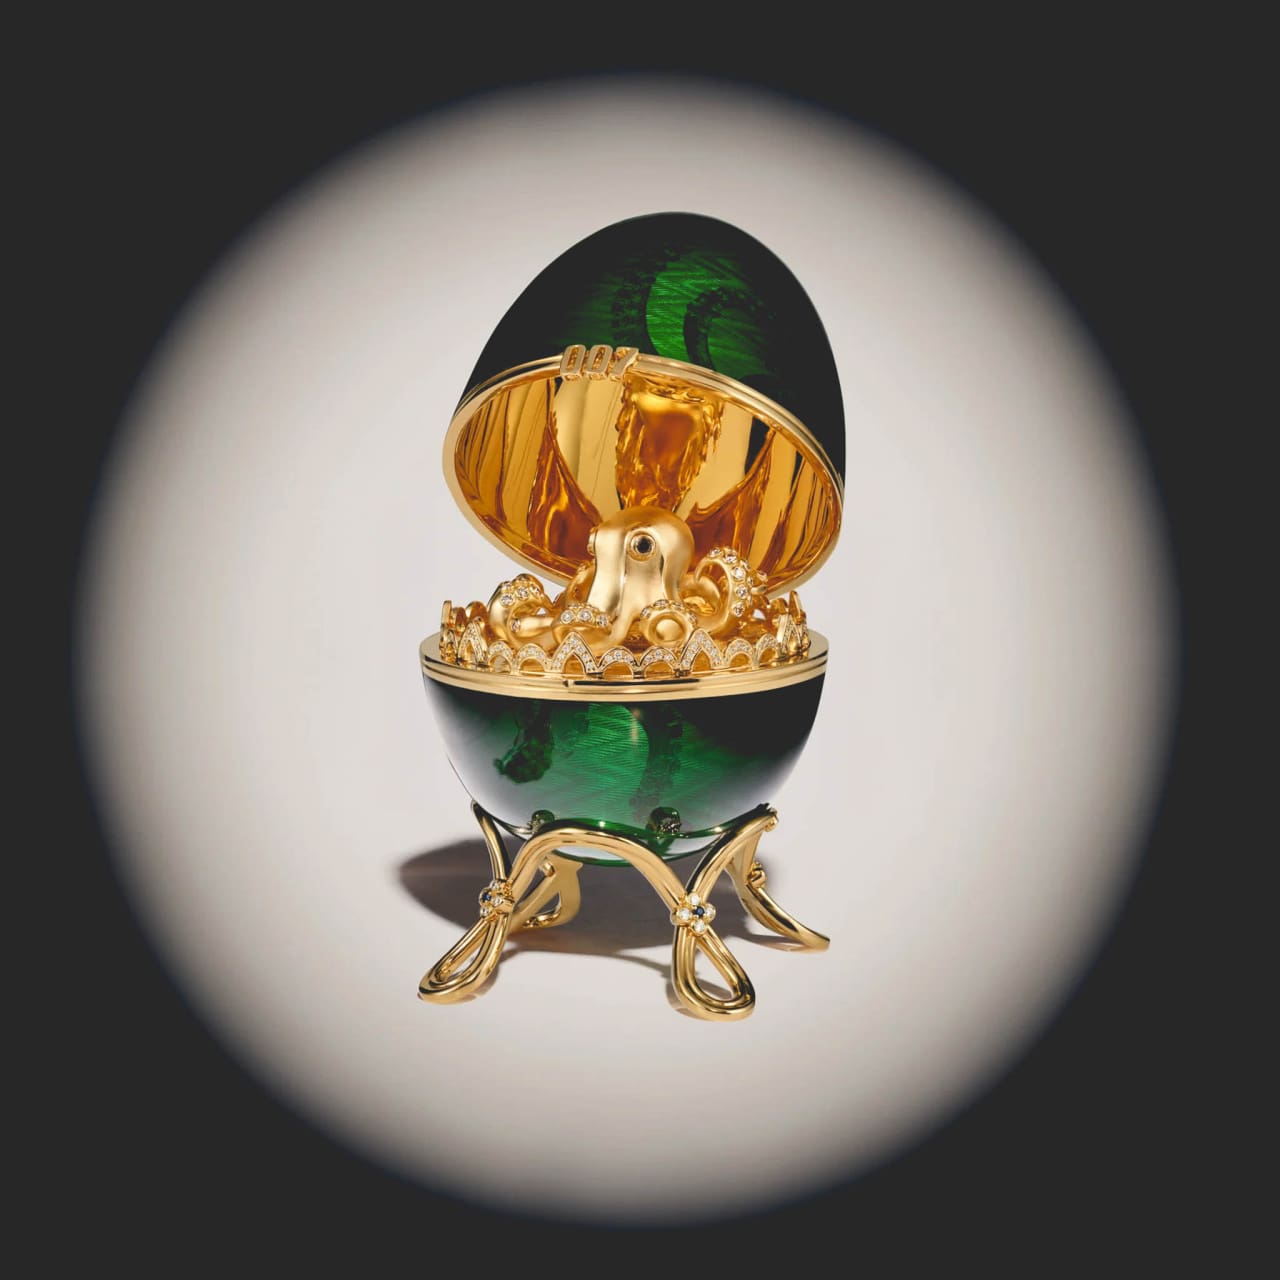 Fabergé 007, Het 007-ei van meer dan €135K: <strong>Octopussy Egg Objet</strong>